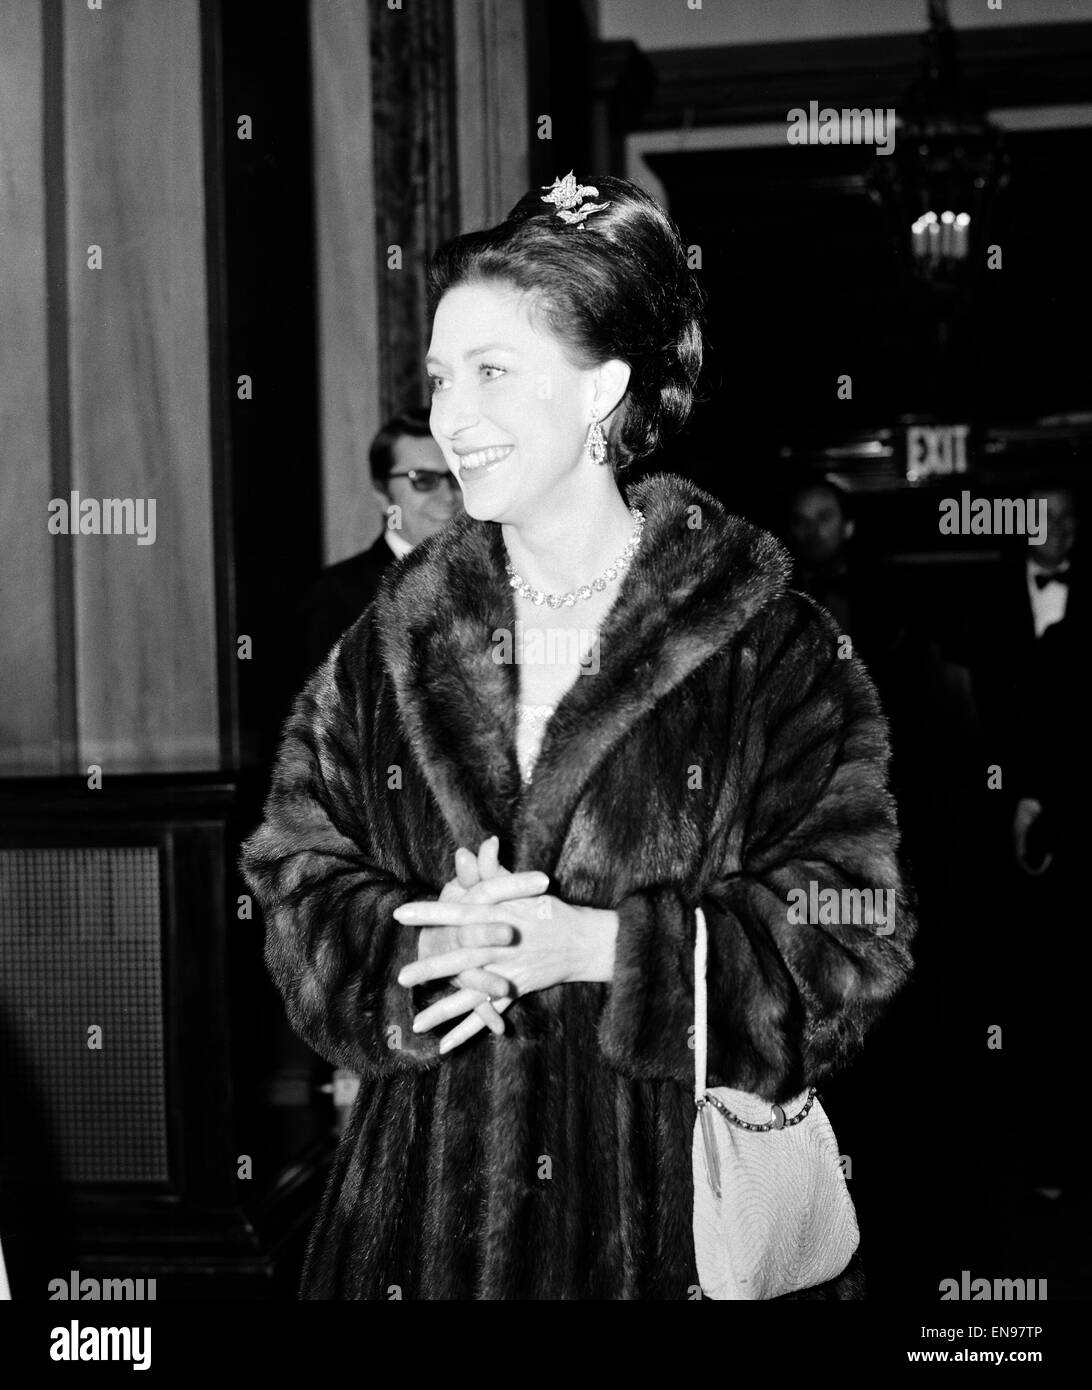 Princess Margaret llega a la Royal Opera House para ver un ballet premiere protagonizada por Margot Fonteyn y Rudolf Nureyev. Ella cayó en el backstage cuando los Rolling Stones recorrieron en 1976. 23 de febrero de 1967. Foto de stock